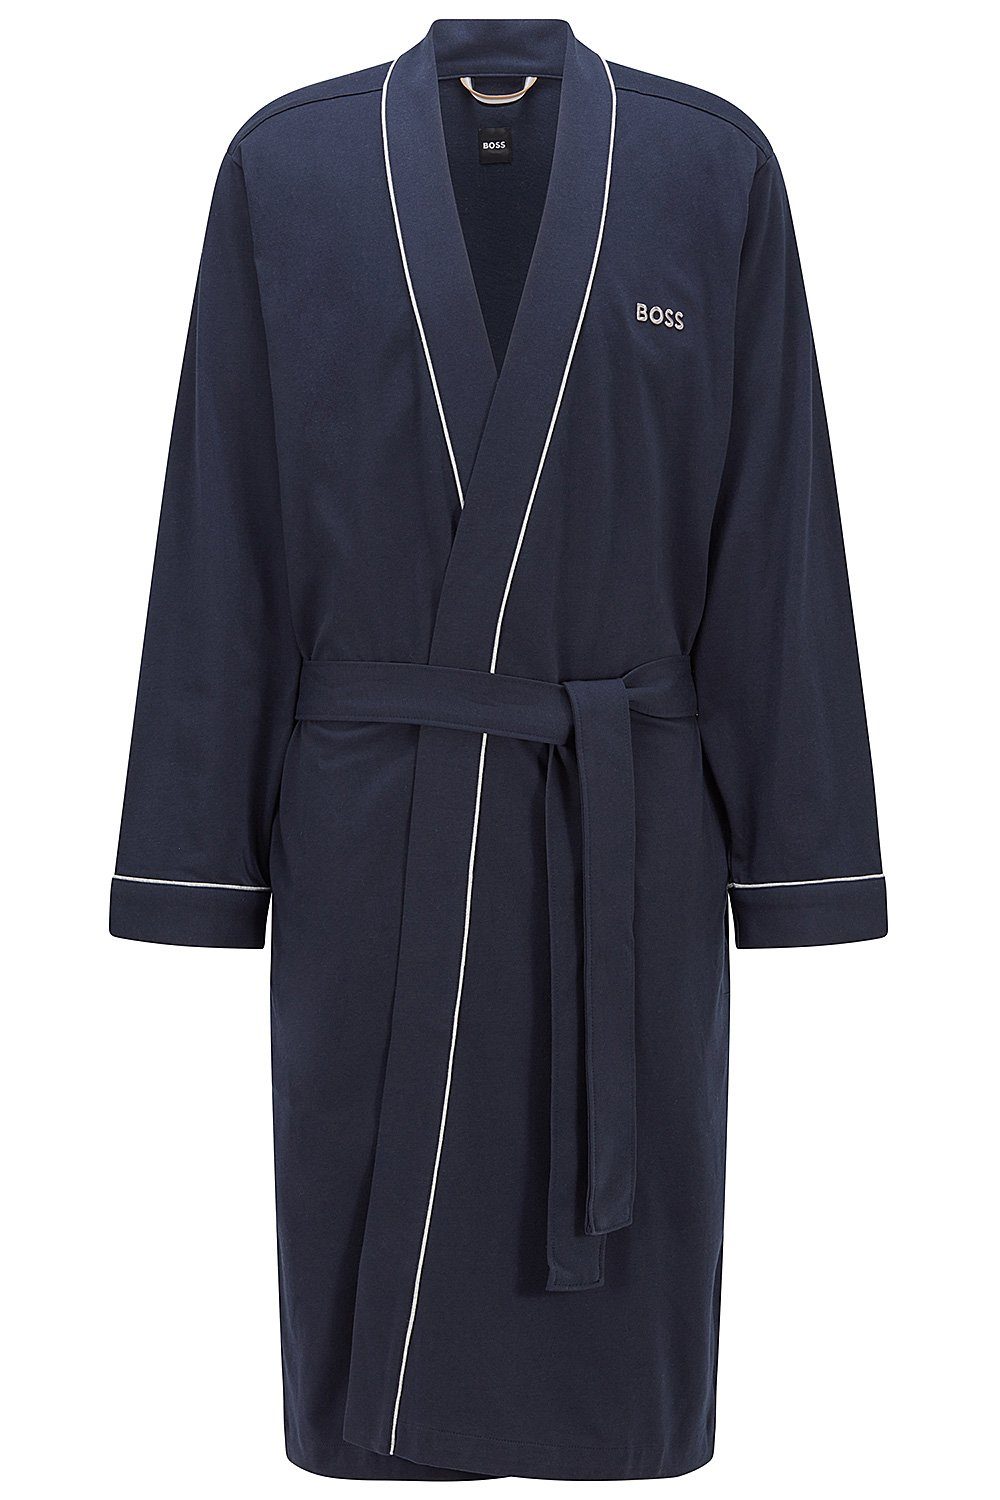 Baumwolle Kimono BOSS (403) Herrenbademantel aus BM, Baumwolle, Taillengürtel, Morgenmantel Blue Dark